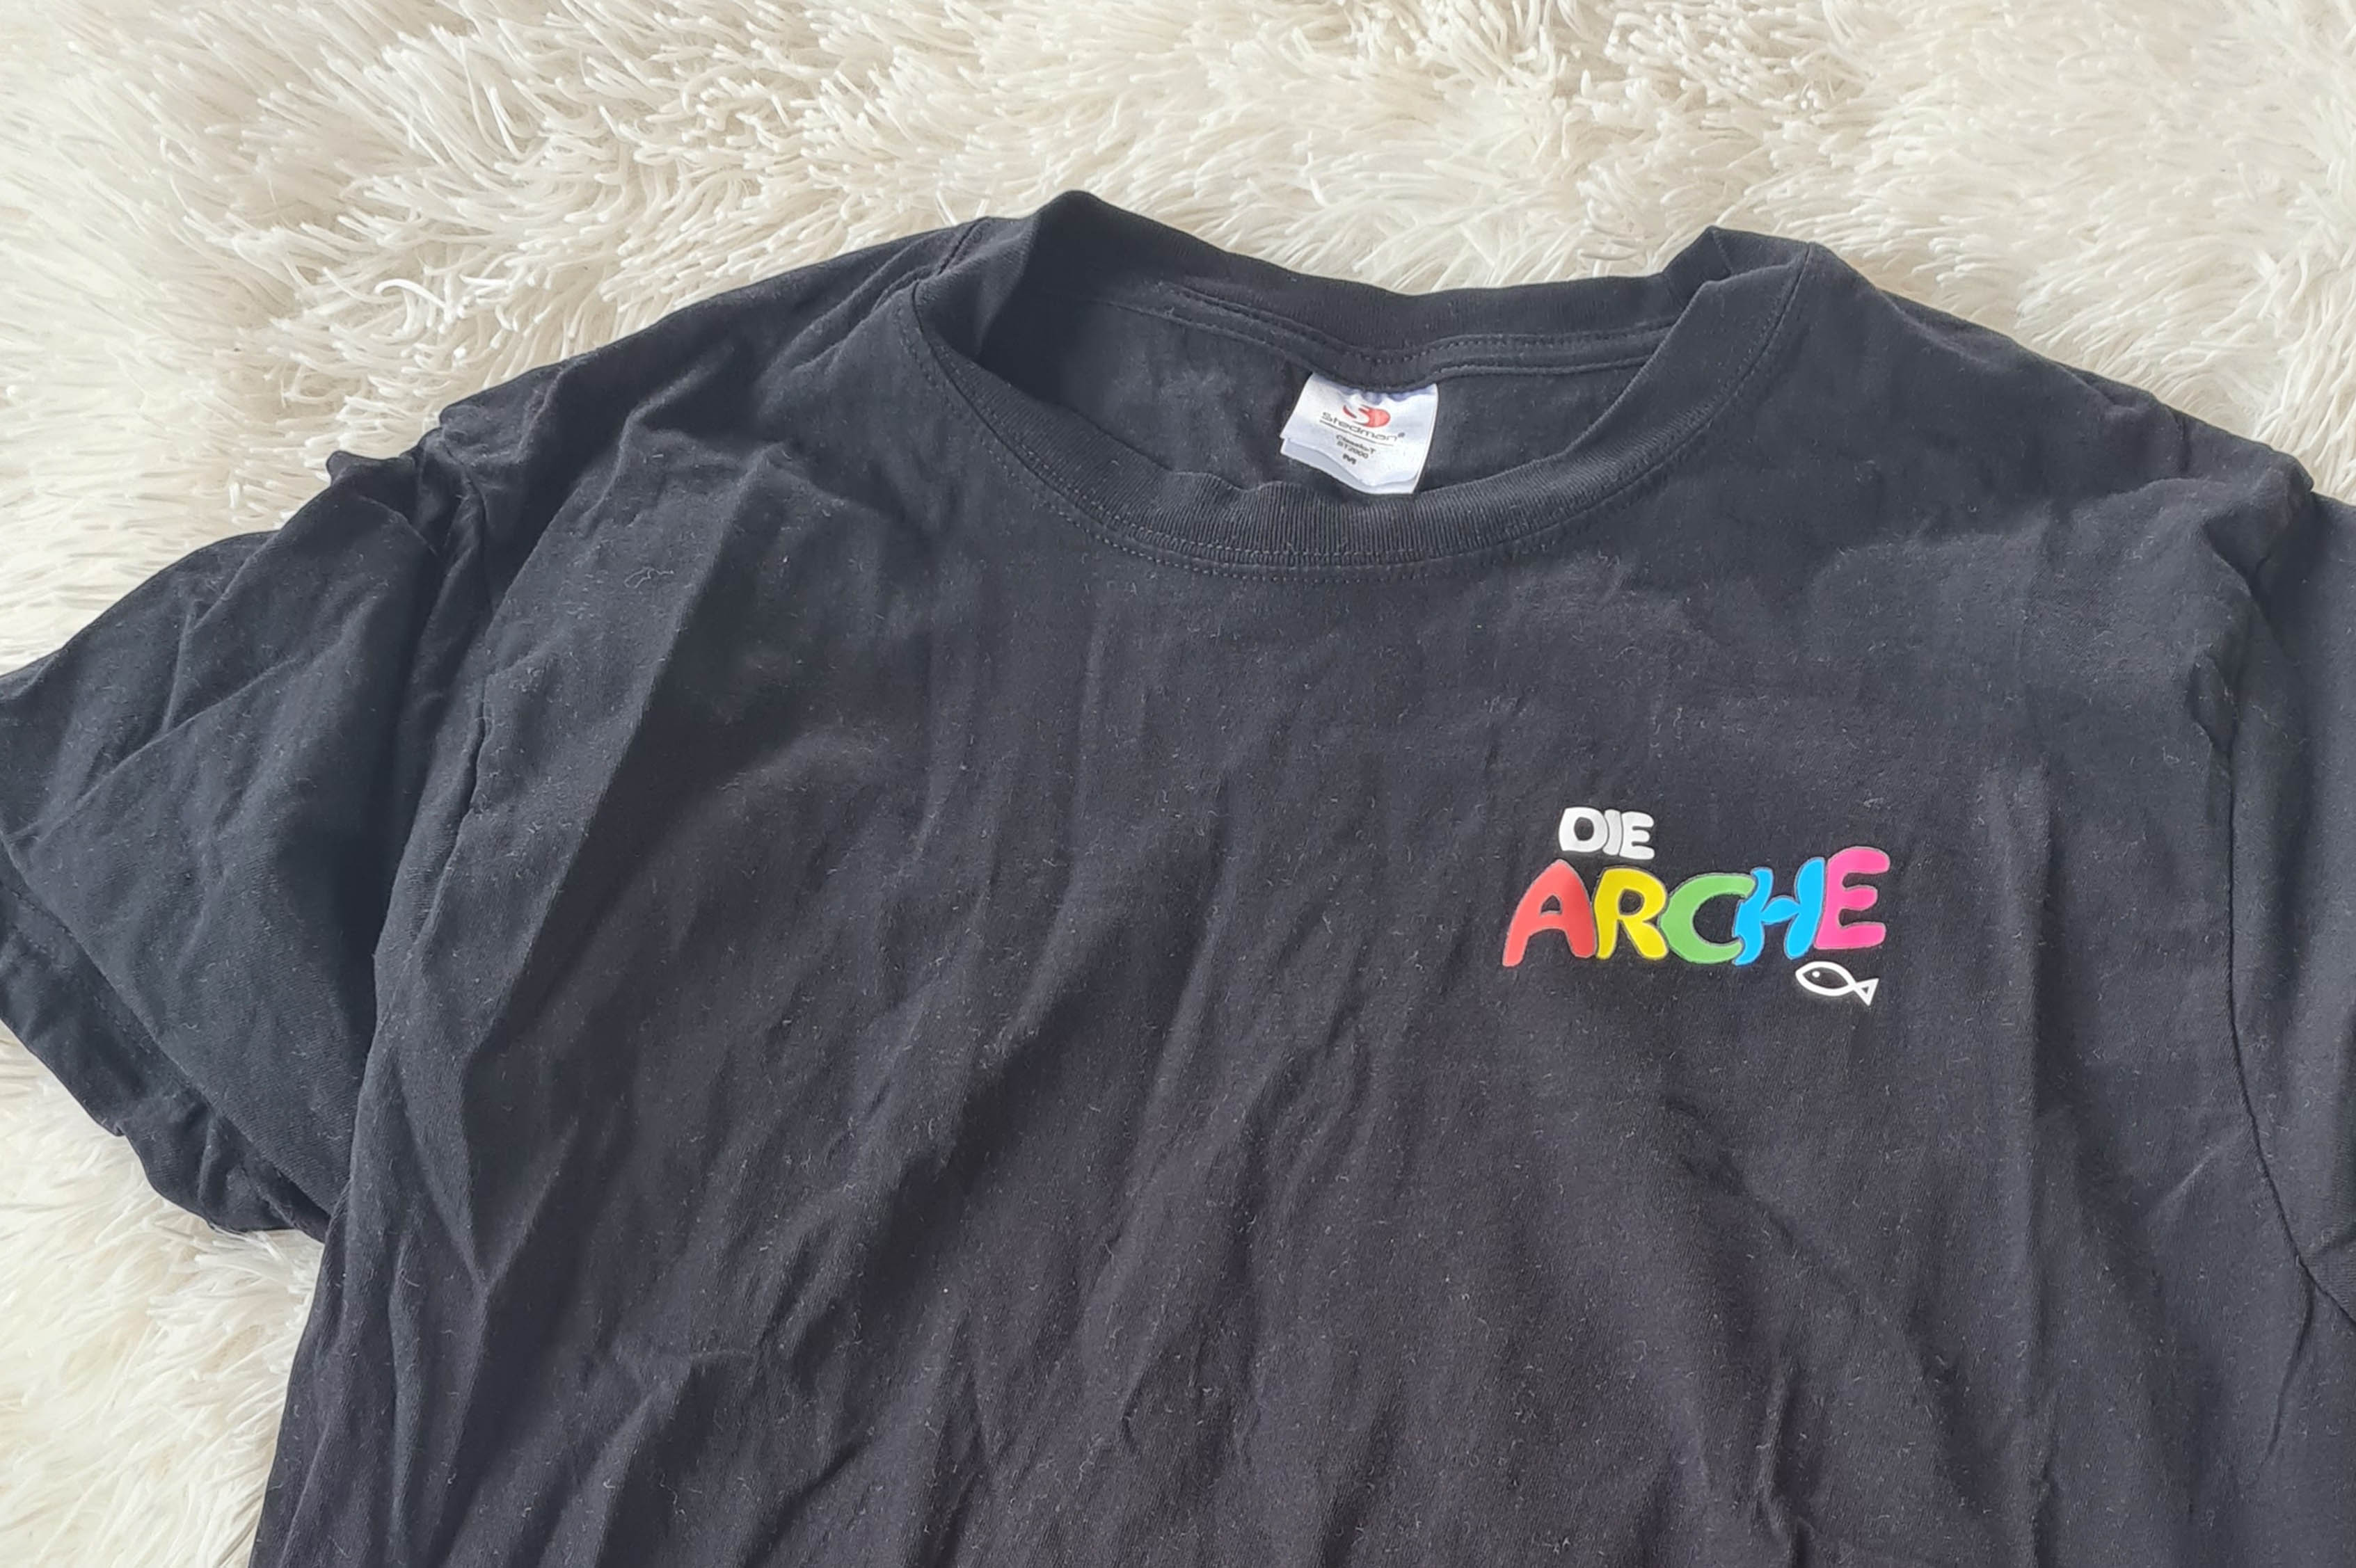 Schwarzes T-Shirt mit Logo der Arche